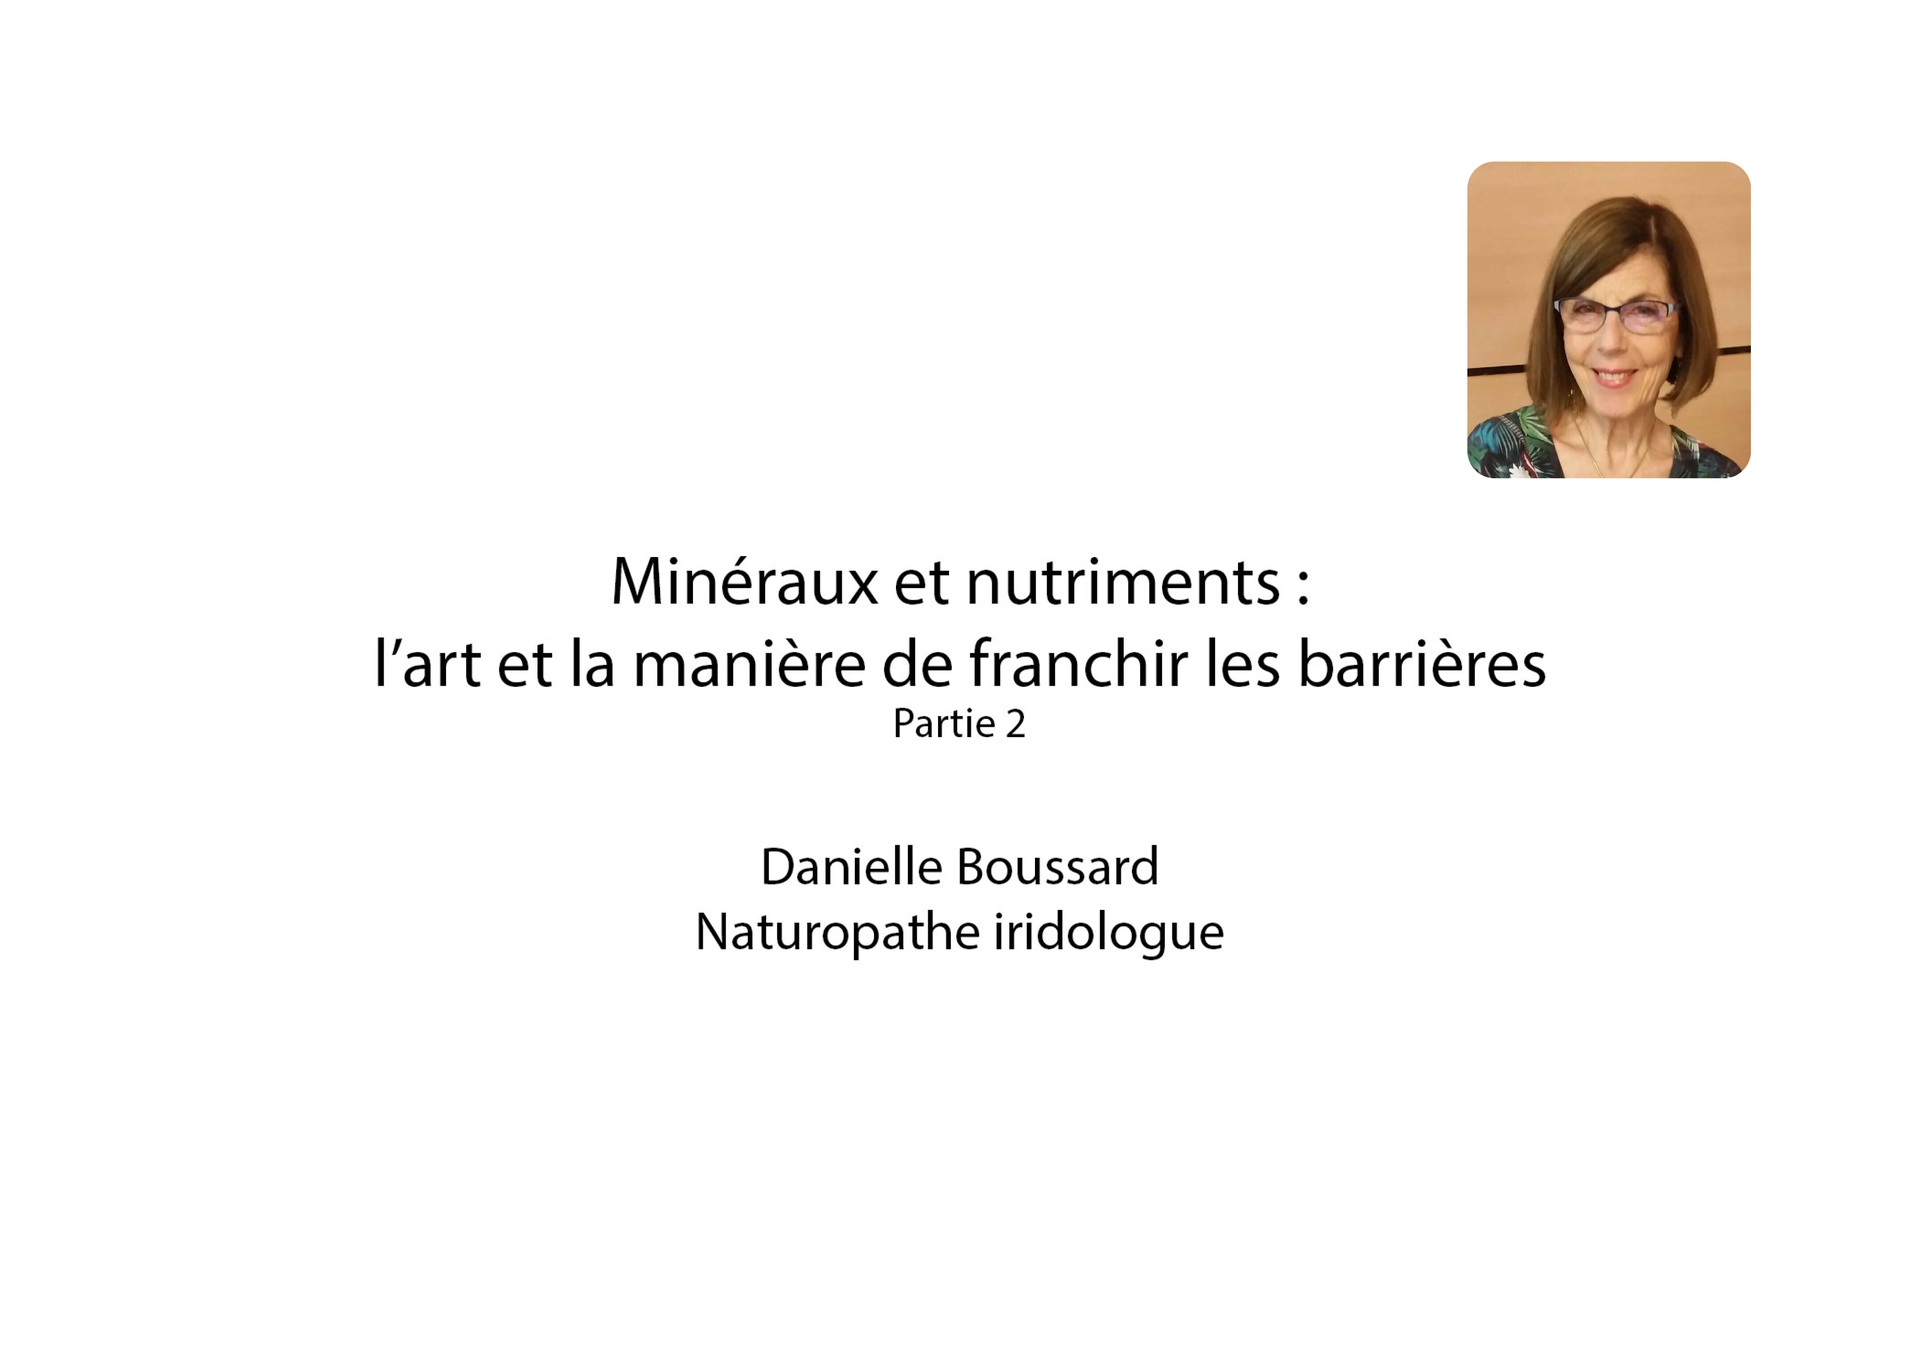 Minéraux et Nutriments part 2 - Danielle Boussard